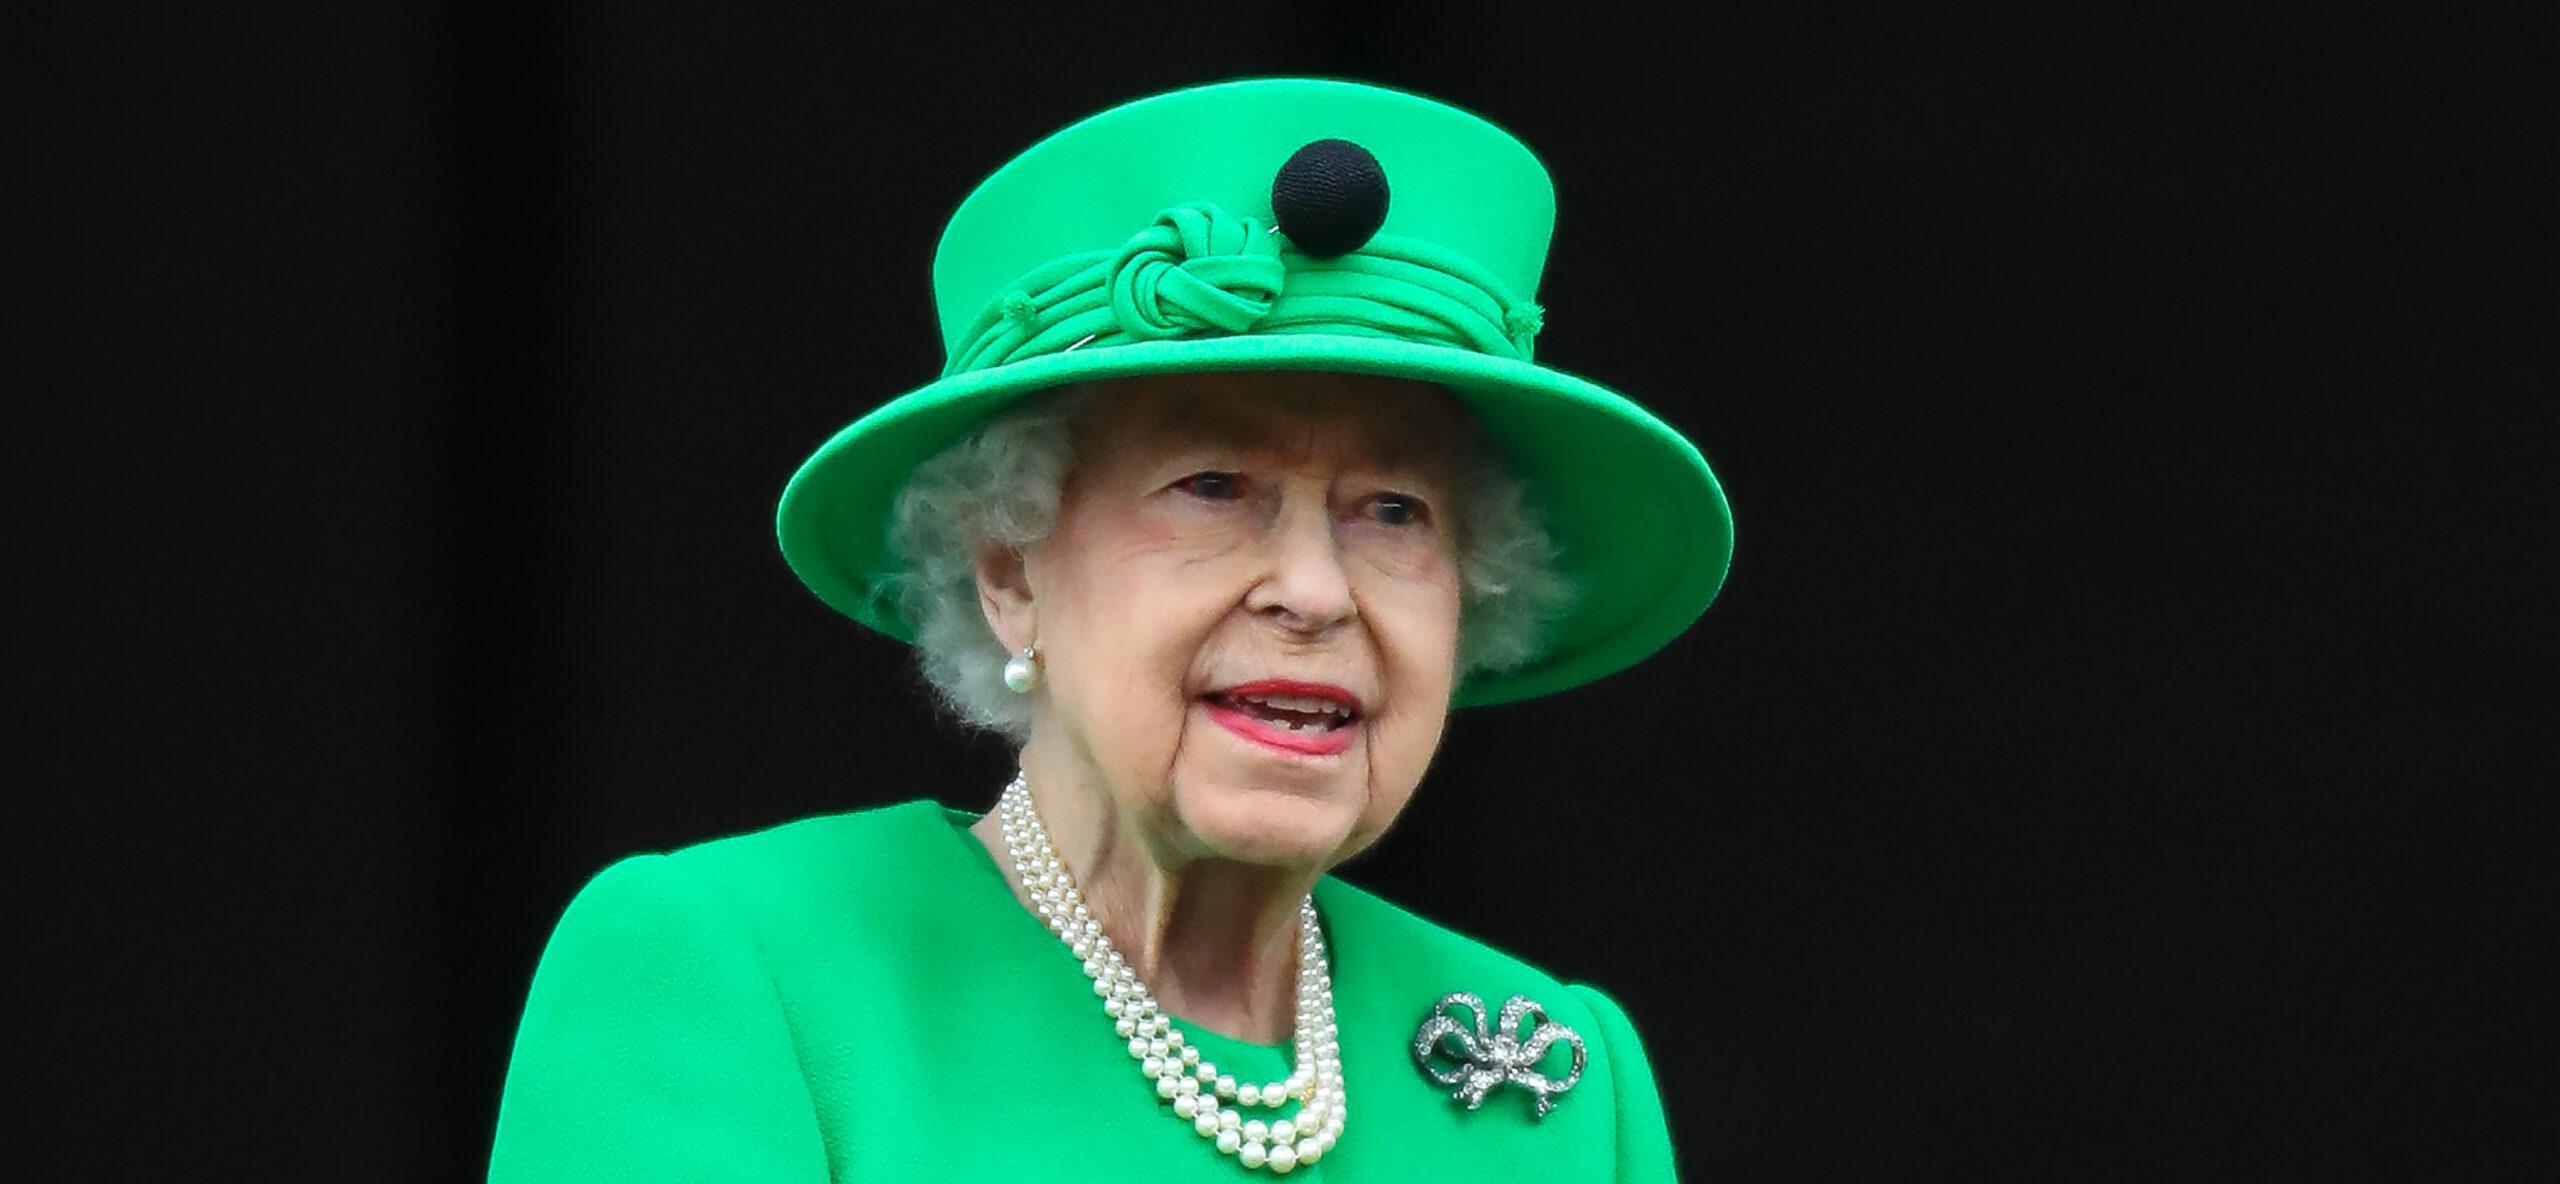 James Corden Says Queen Elizabeth II ‘Was Never Political’ In Touching Tribute